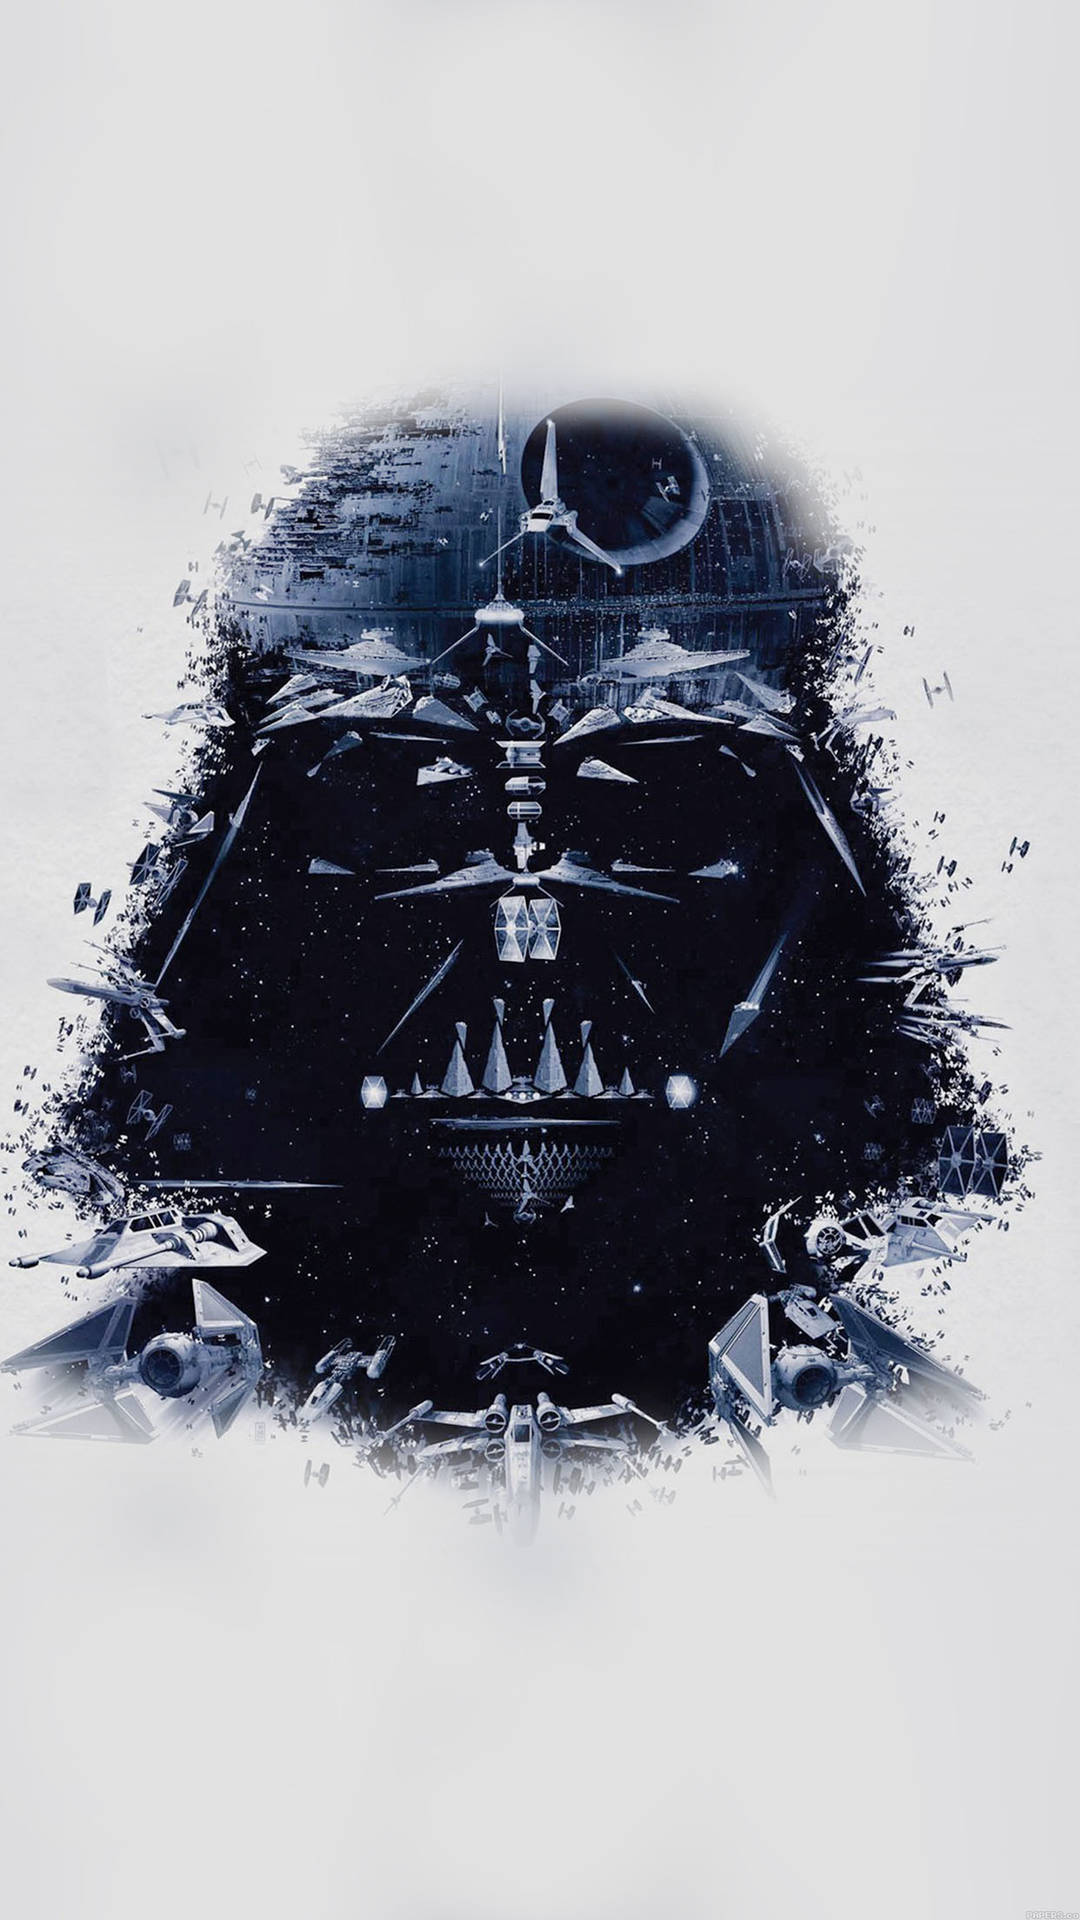 Darth Vader Death Star Star Wars Iphone 7 Background